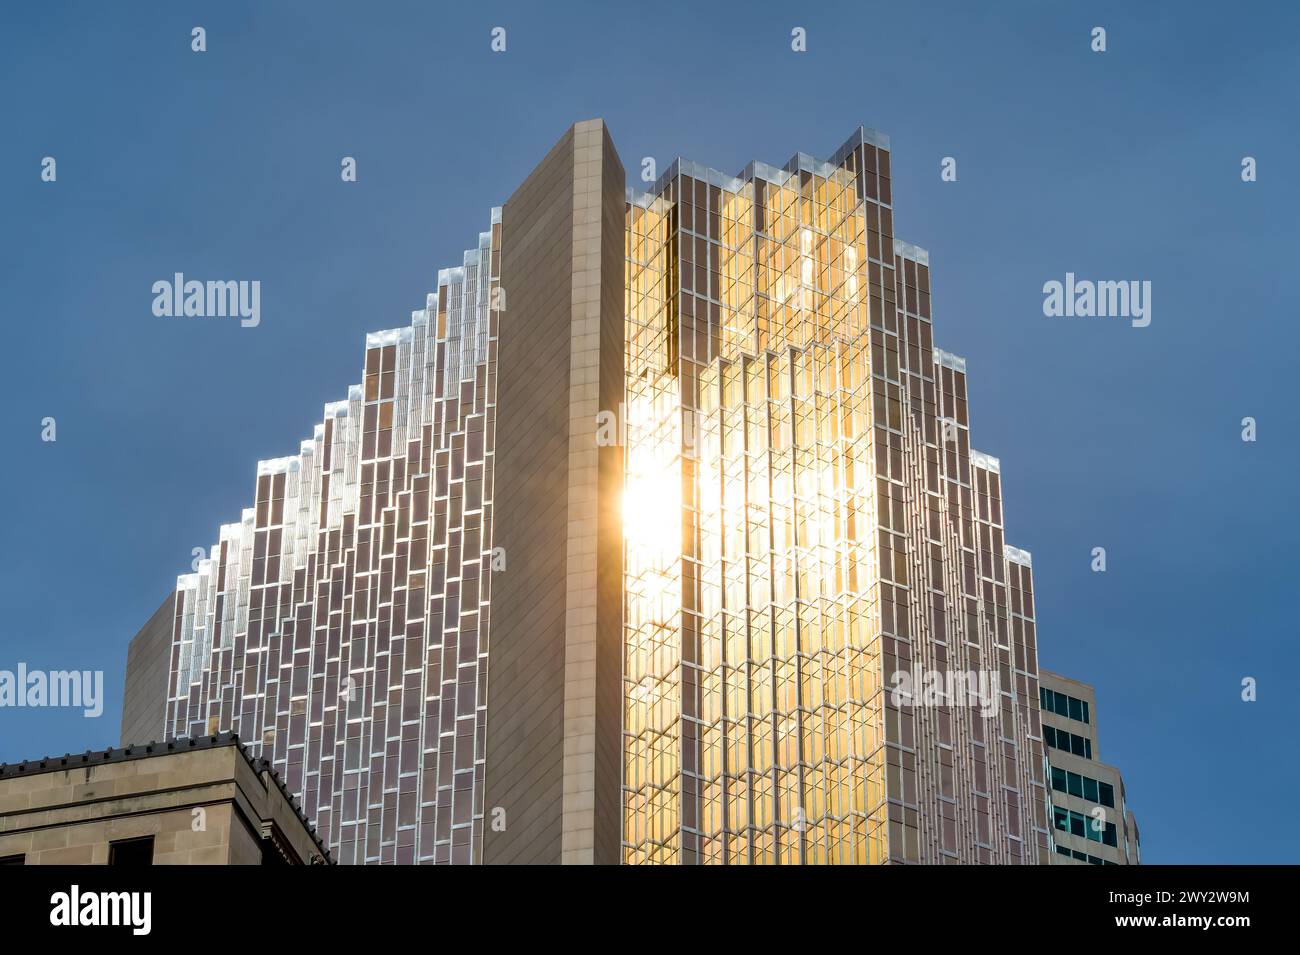 Reflet de la lumière du soleil sur la place de la Banque Royale, Tour Nord, Toronto, Canada Banque D'Images